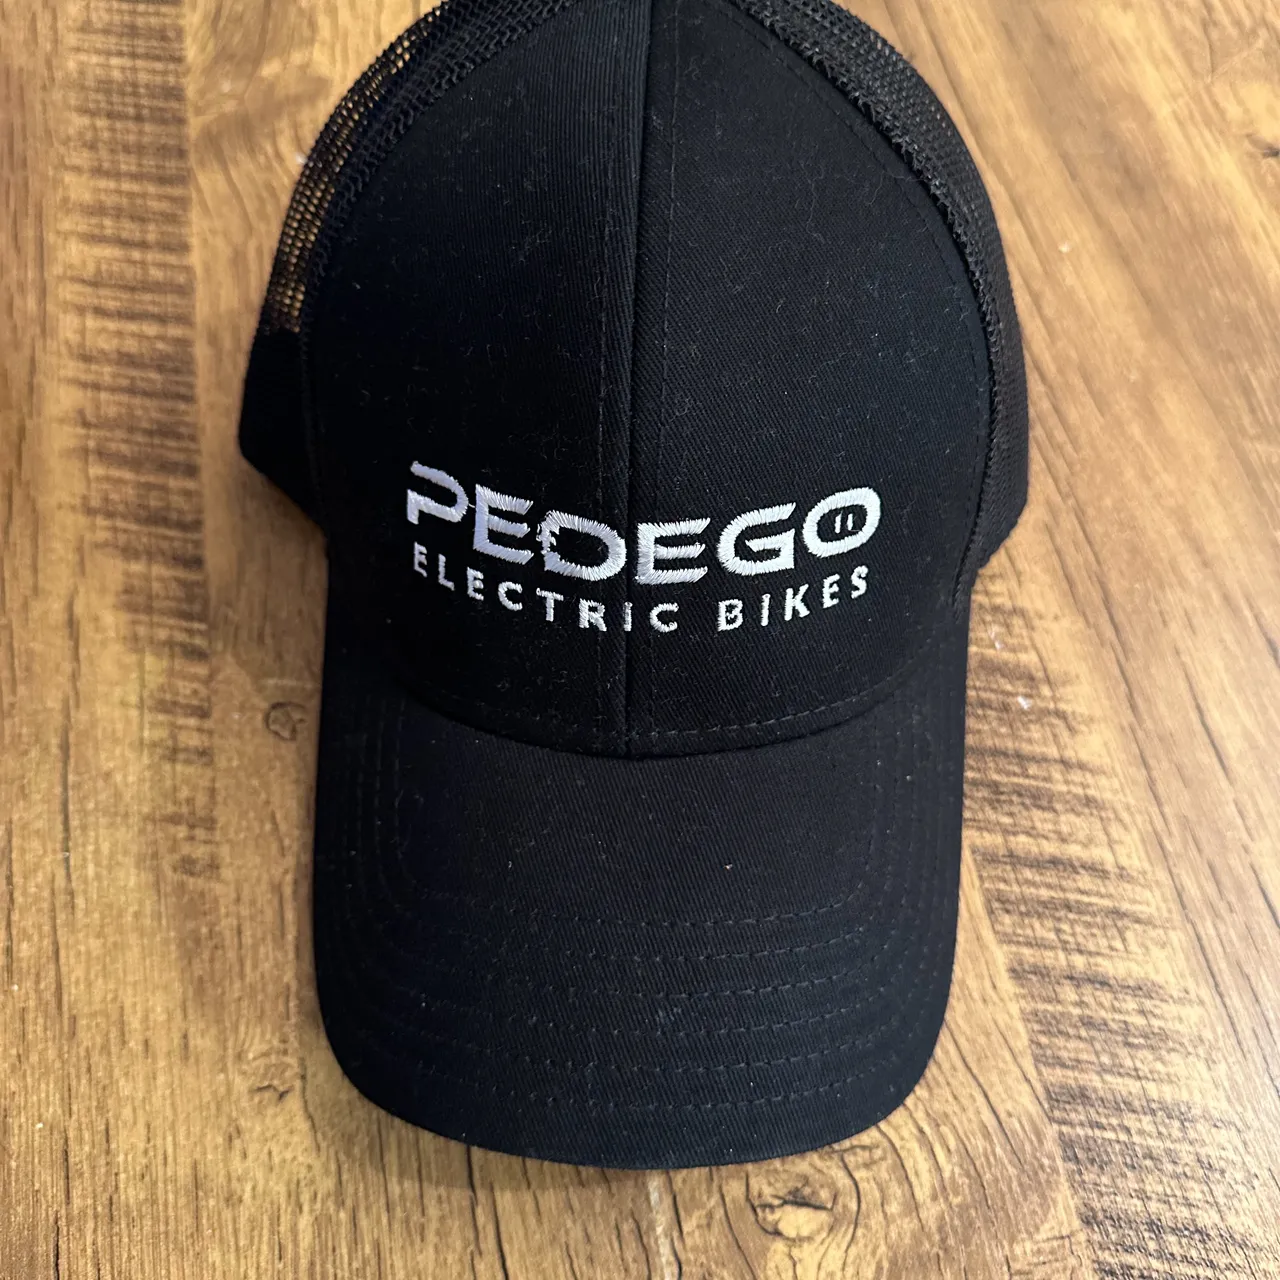 Pedego electric bike cap photo 1